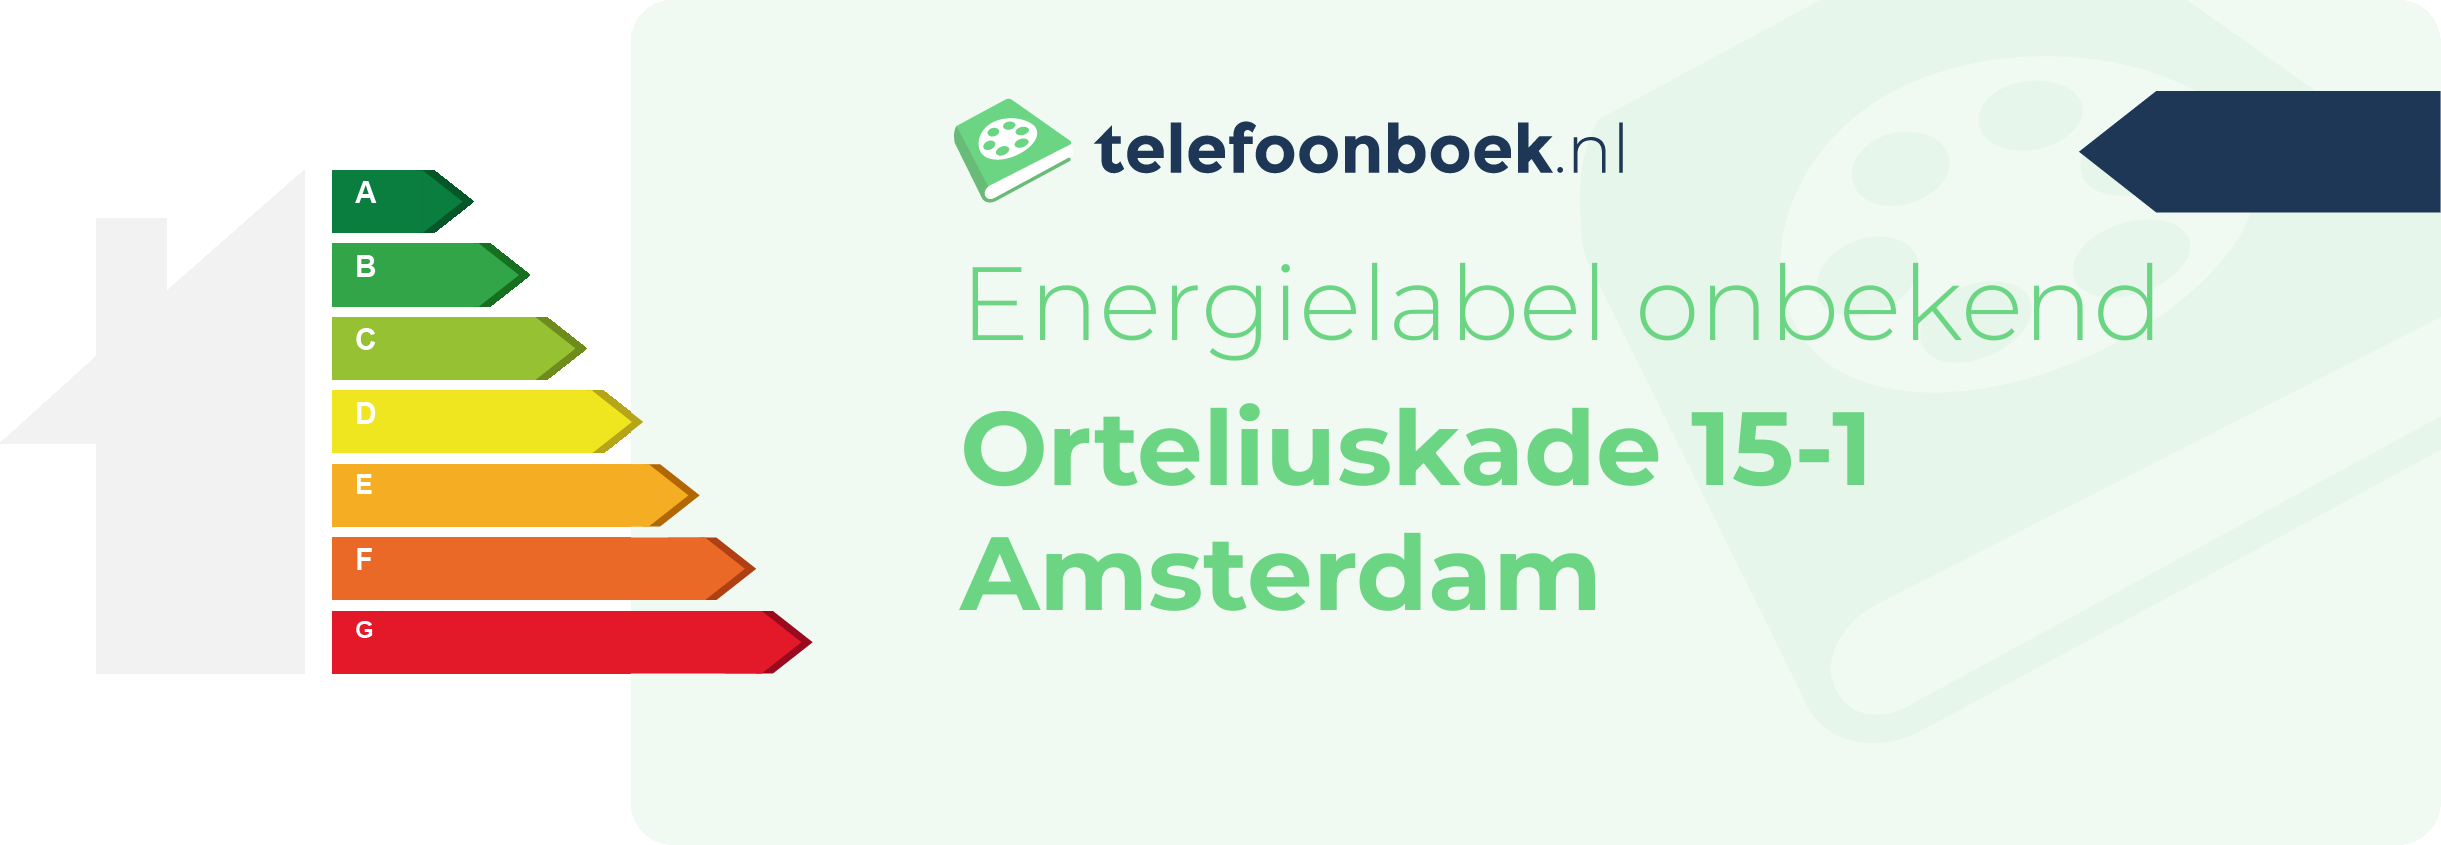 Energielabel Orteliuskade 15-1 Amsterdam